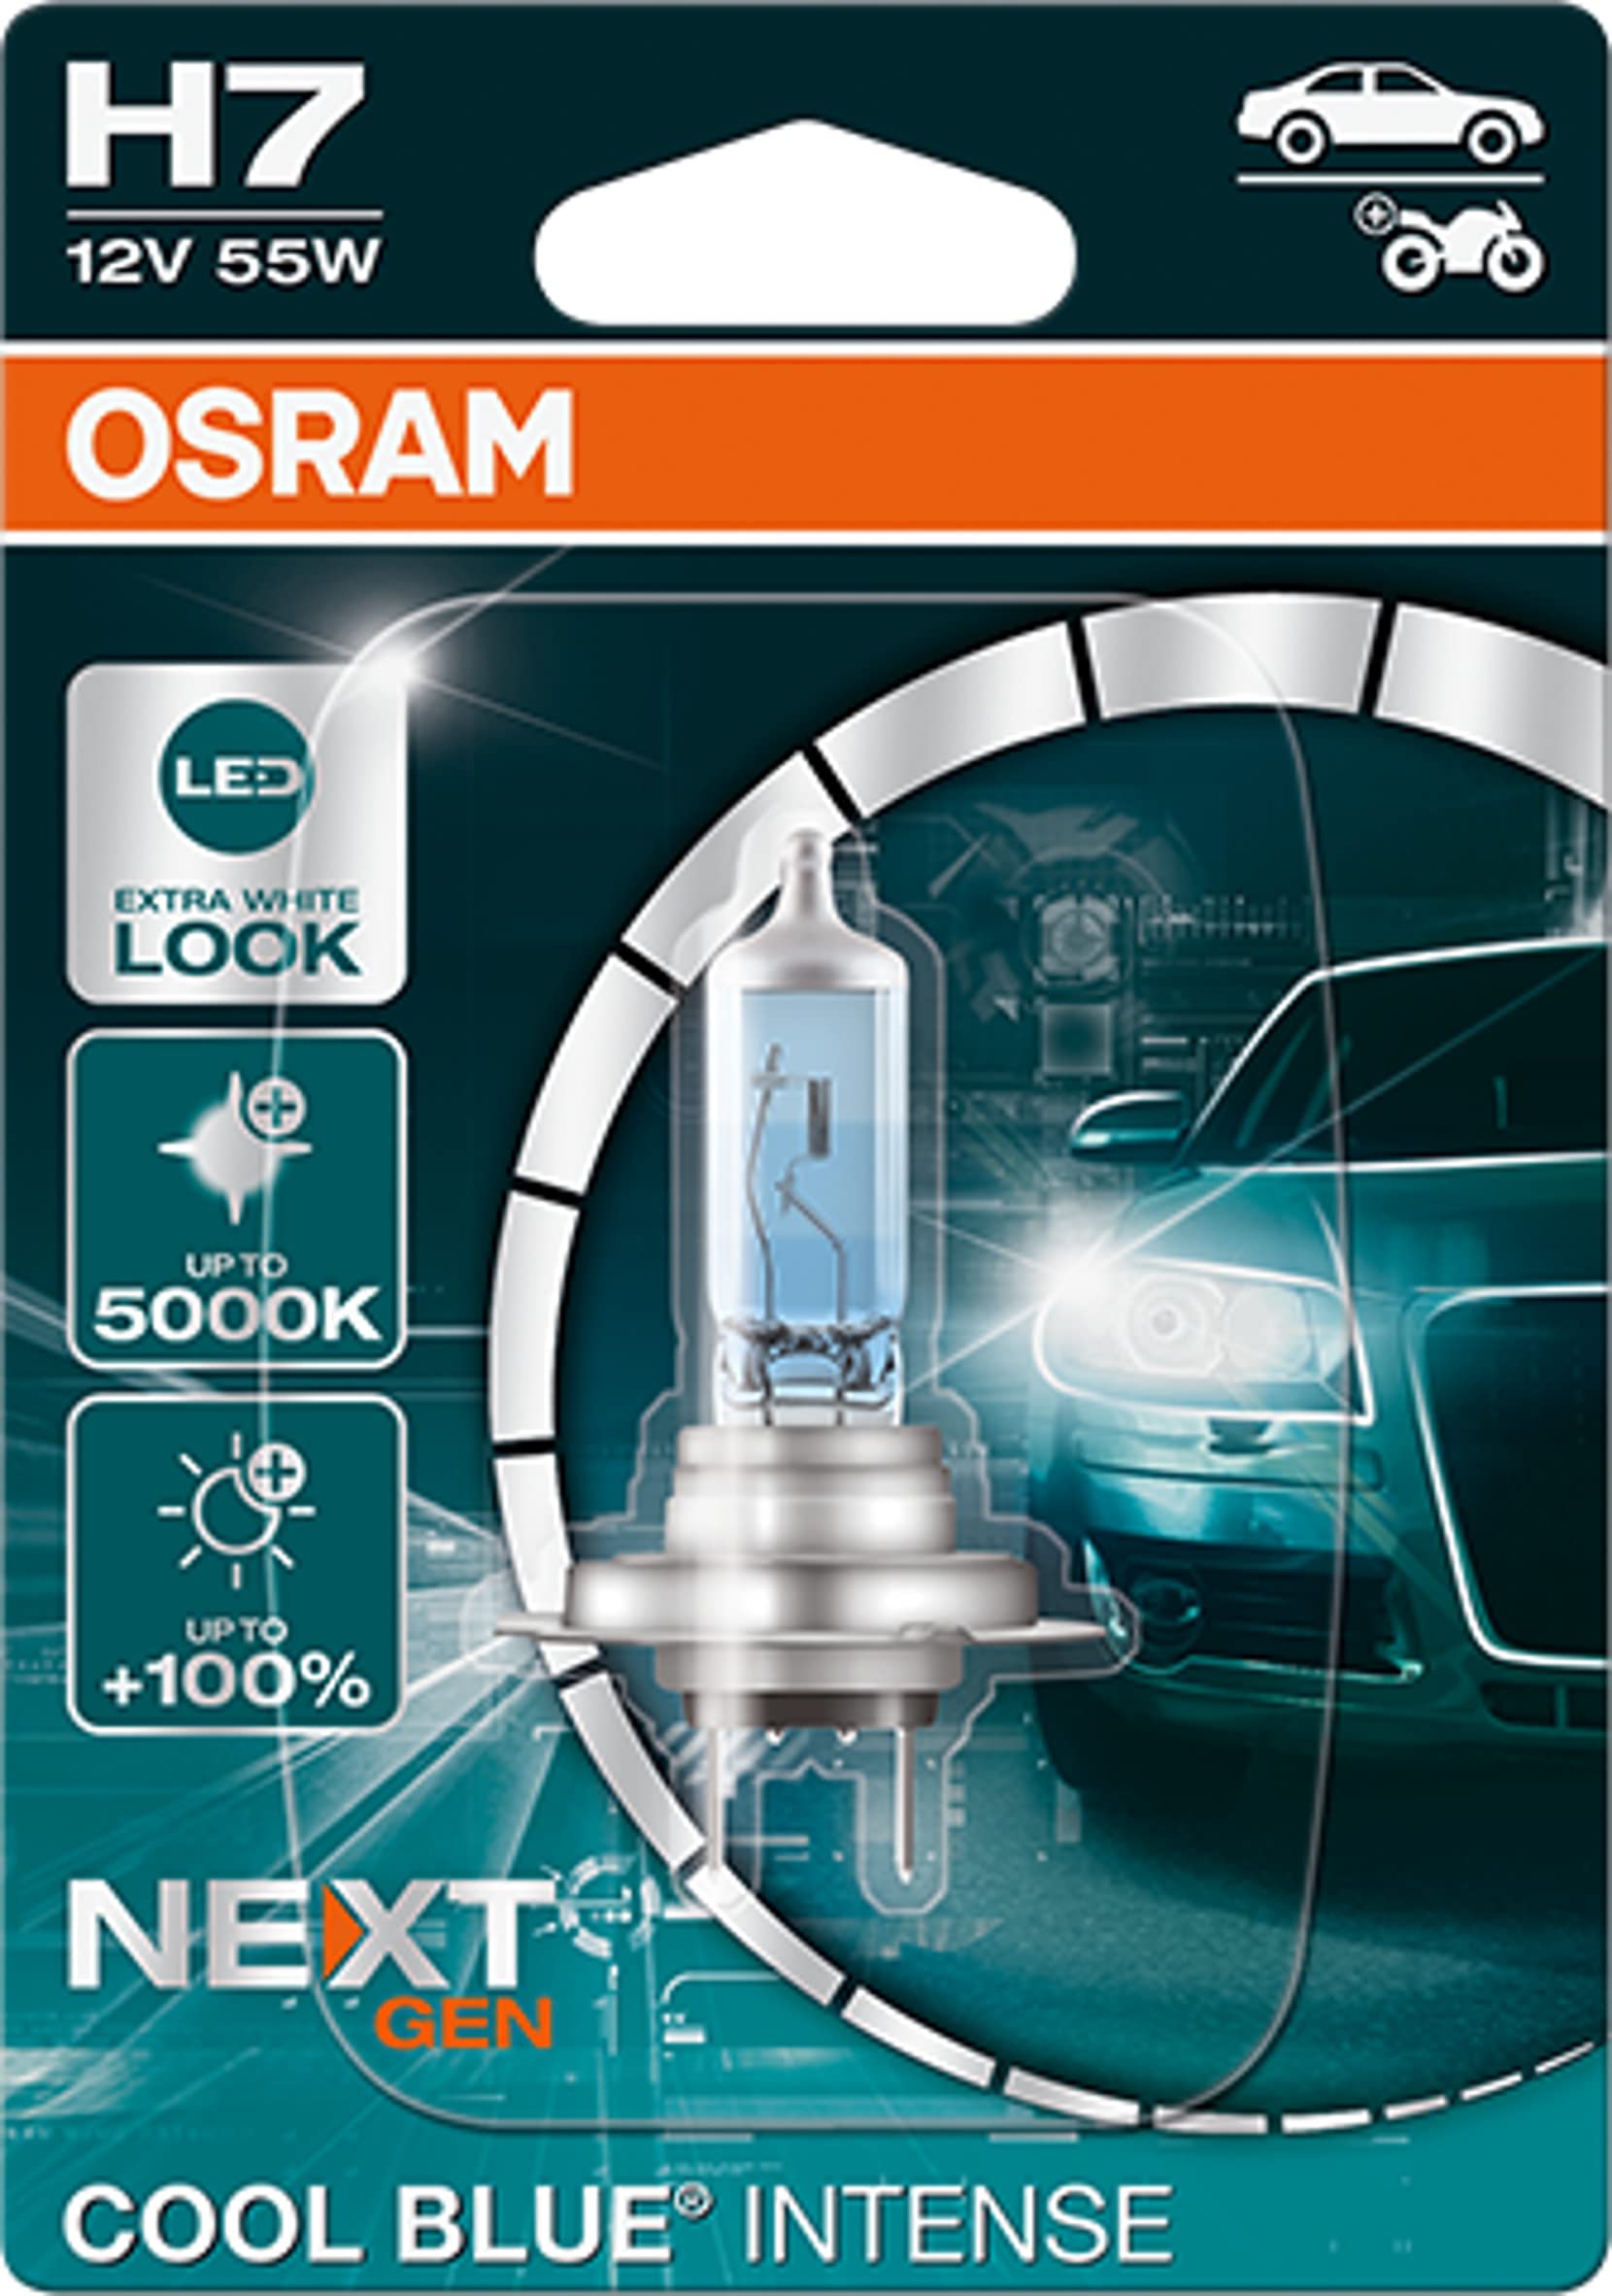 OSRAM COOL BLUE® INTENSE H7, +100% mehr Helligkeit, bis zu 5.000K, Halogen-Scheinwerferlampe, LED-Look, Einzelblister (1 Lampe) von Osram